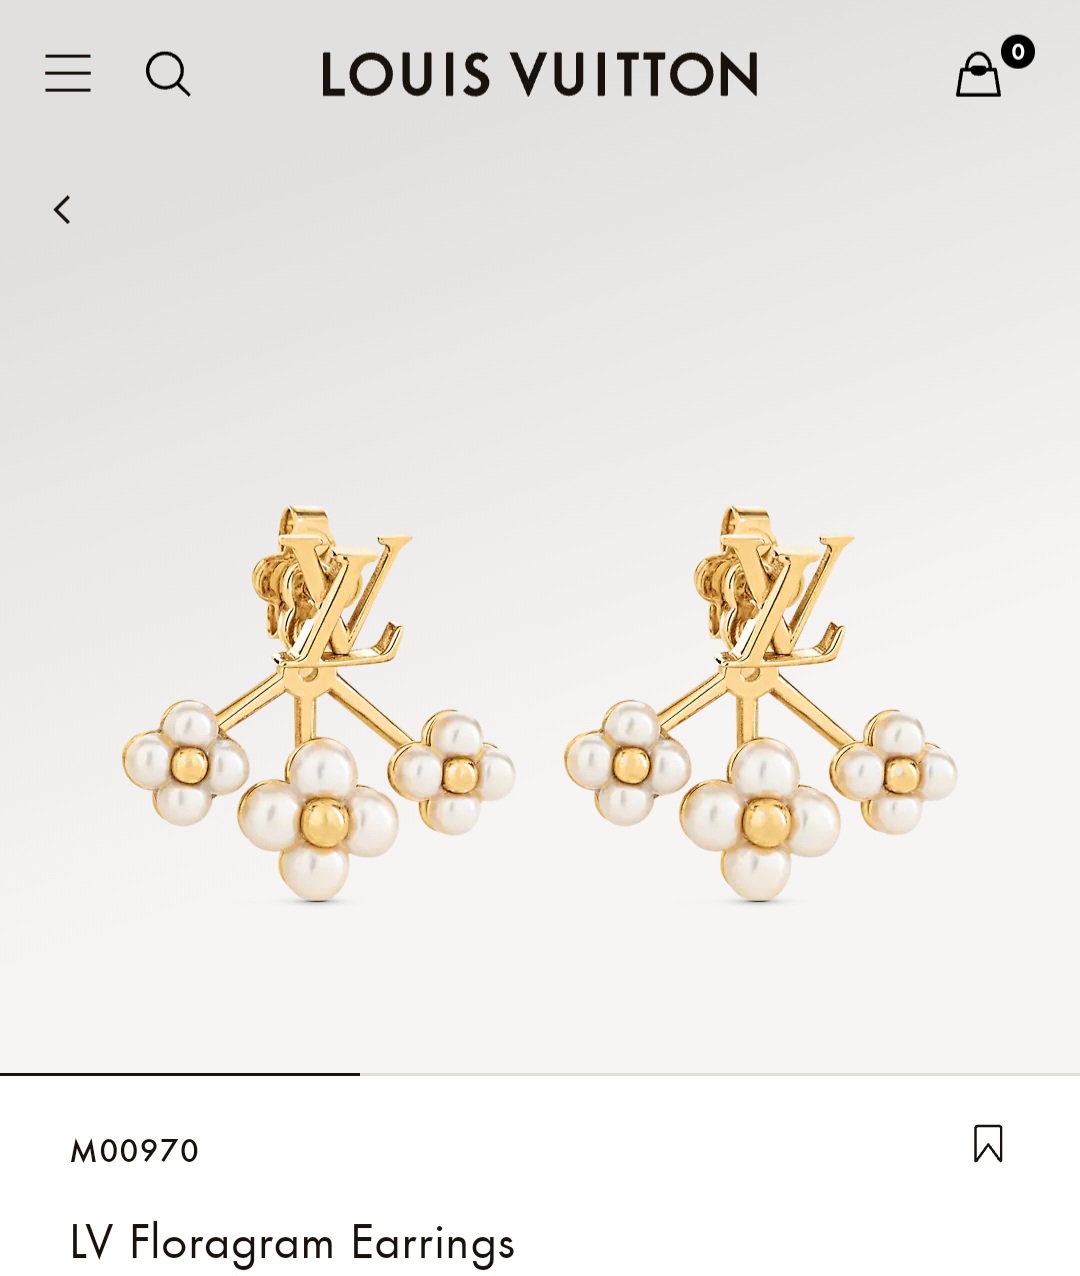 LV Floragram earrings